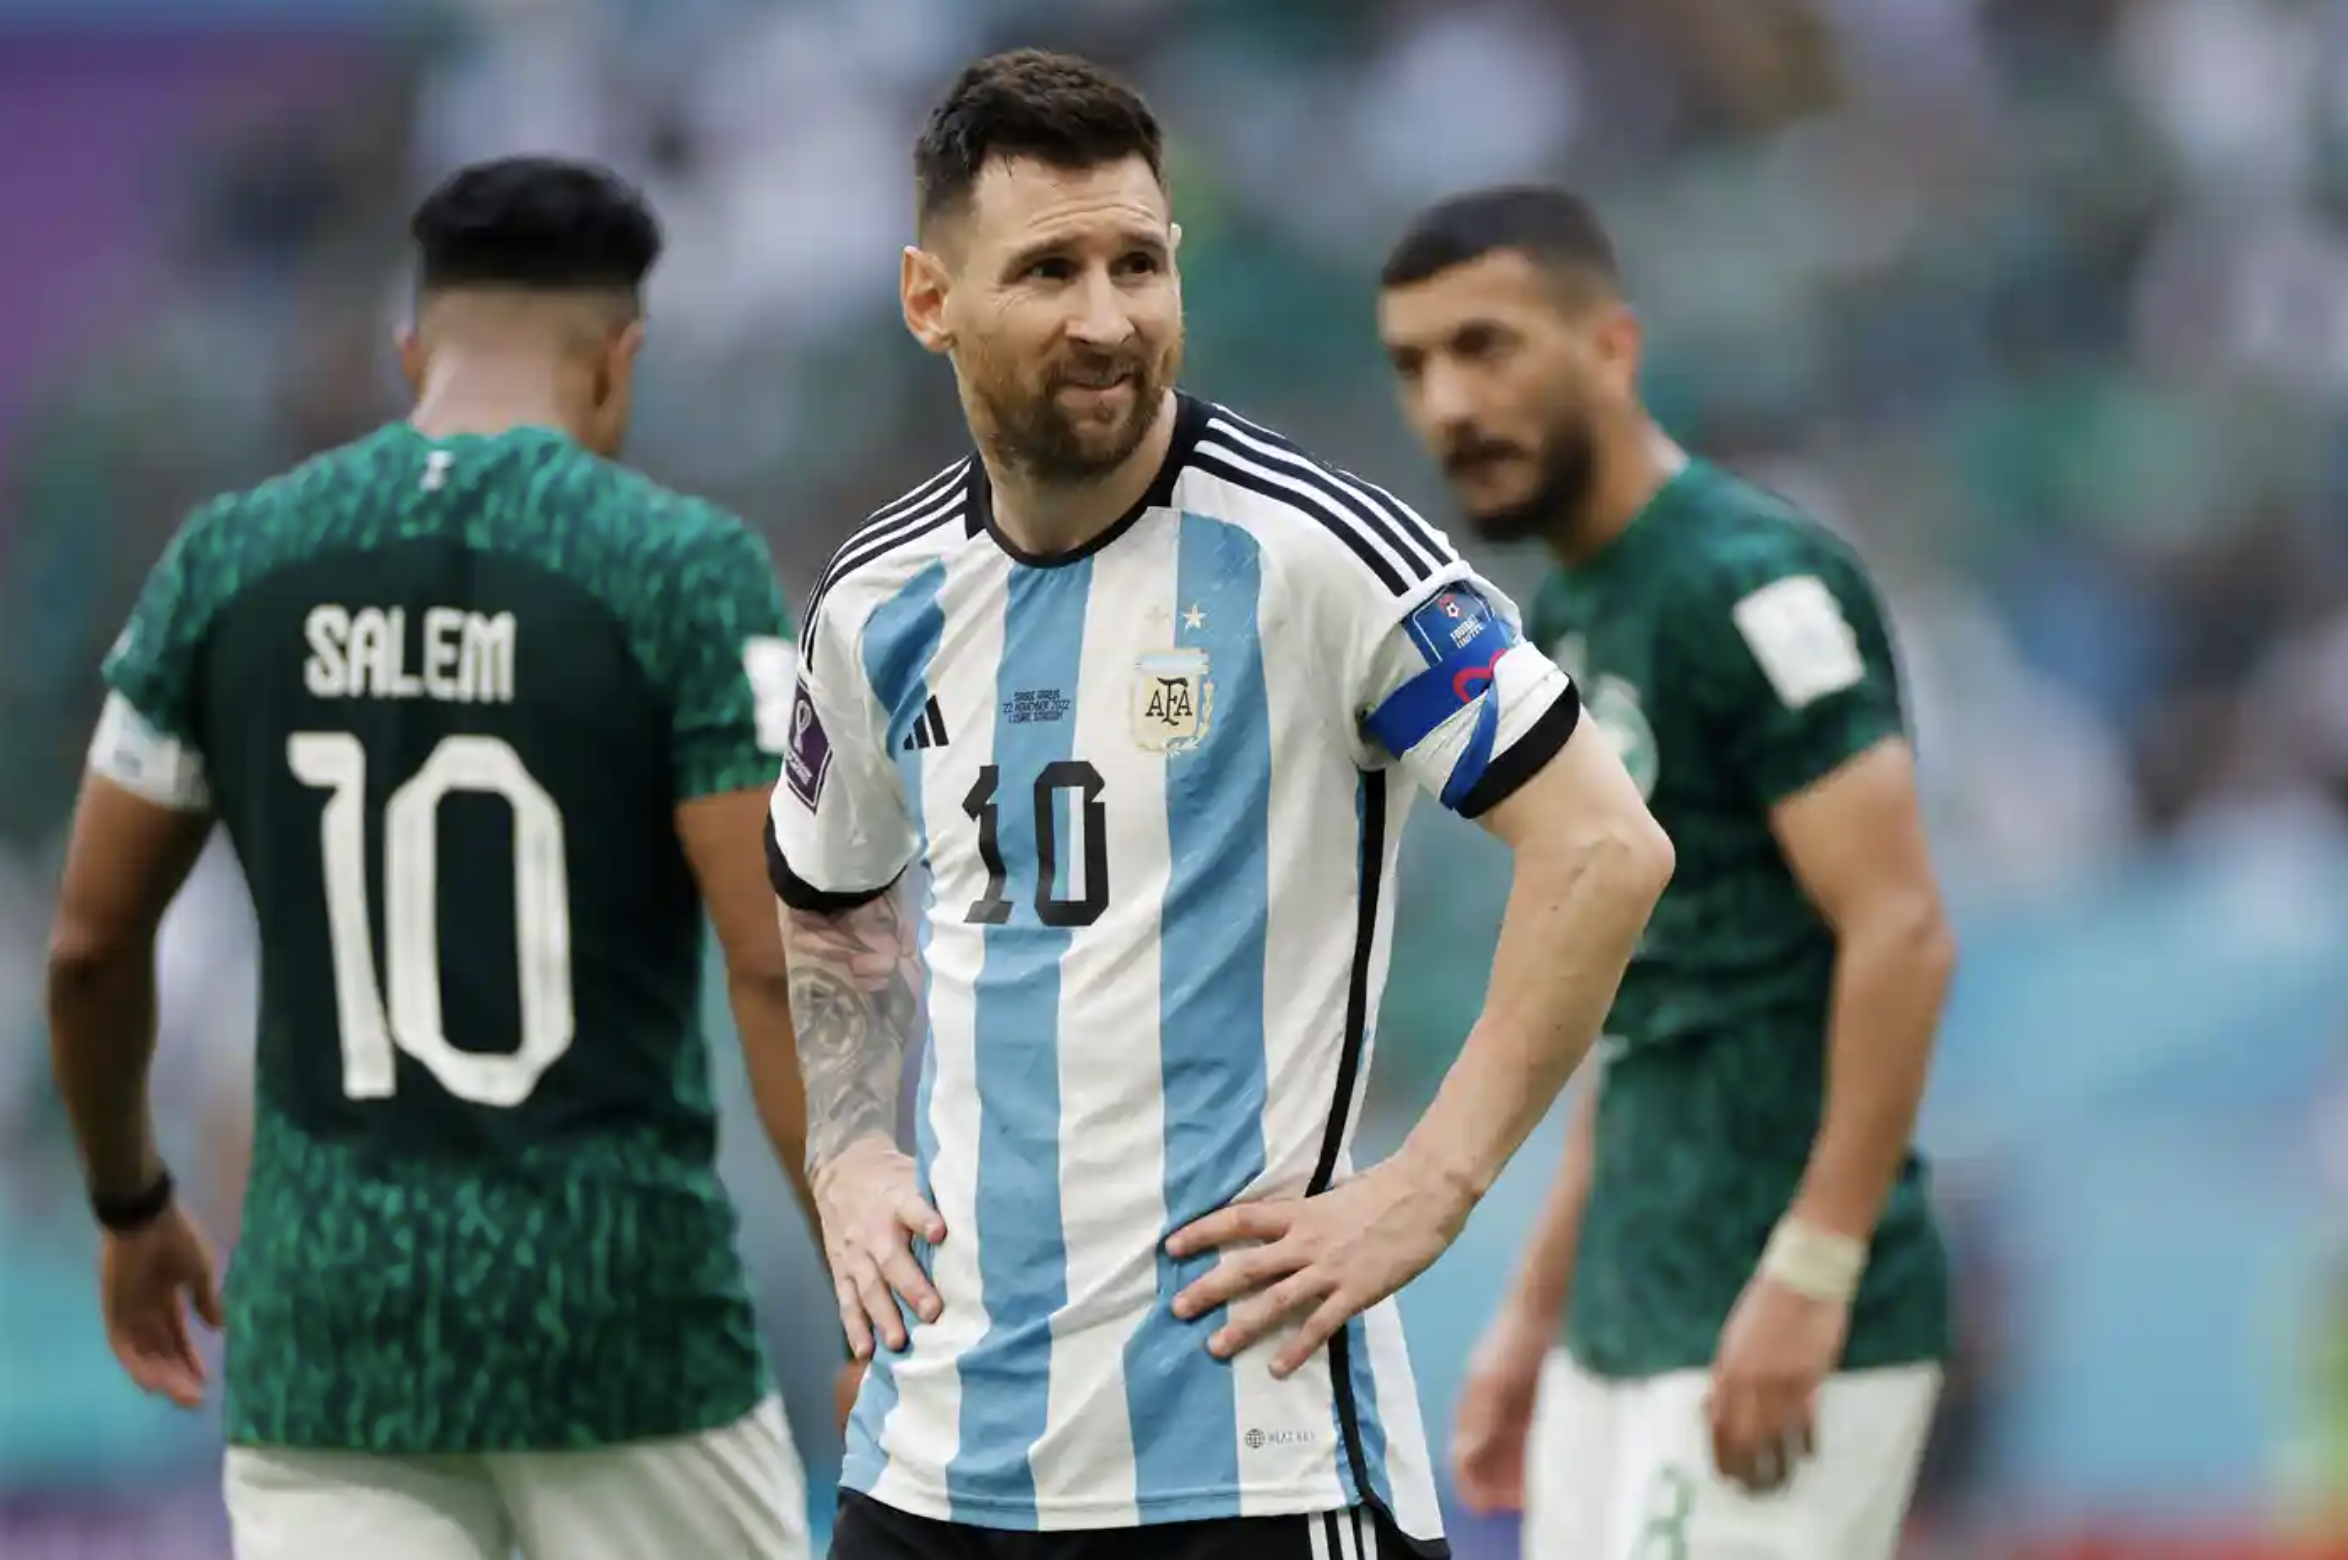 Tại hiệp 1, tỷ số trận bóng đang là 1-0 nghiêng về đội tuyển Argentina